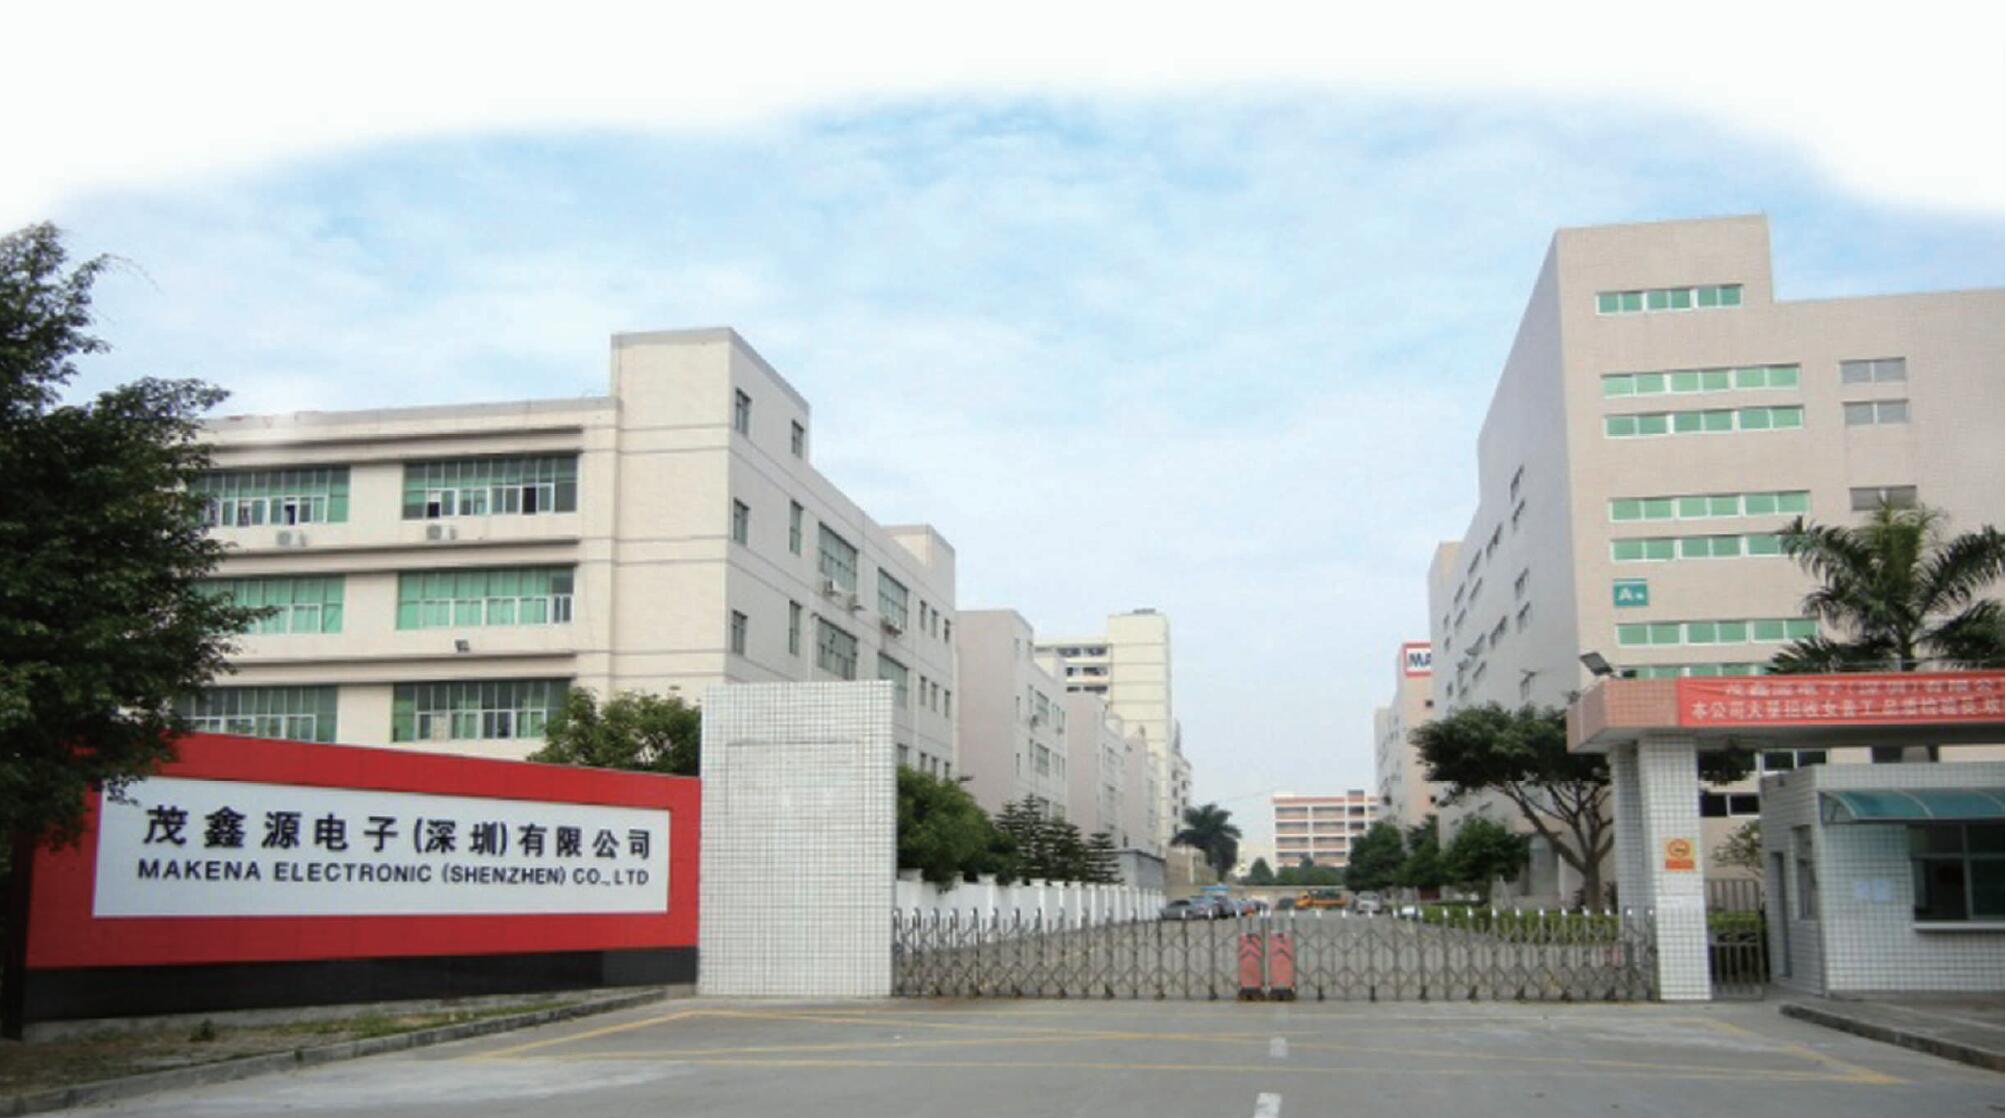 Makena electronic (Shenzhen) Company Limited